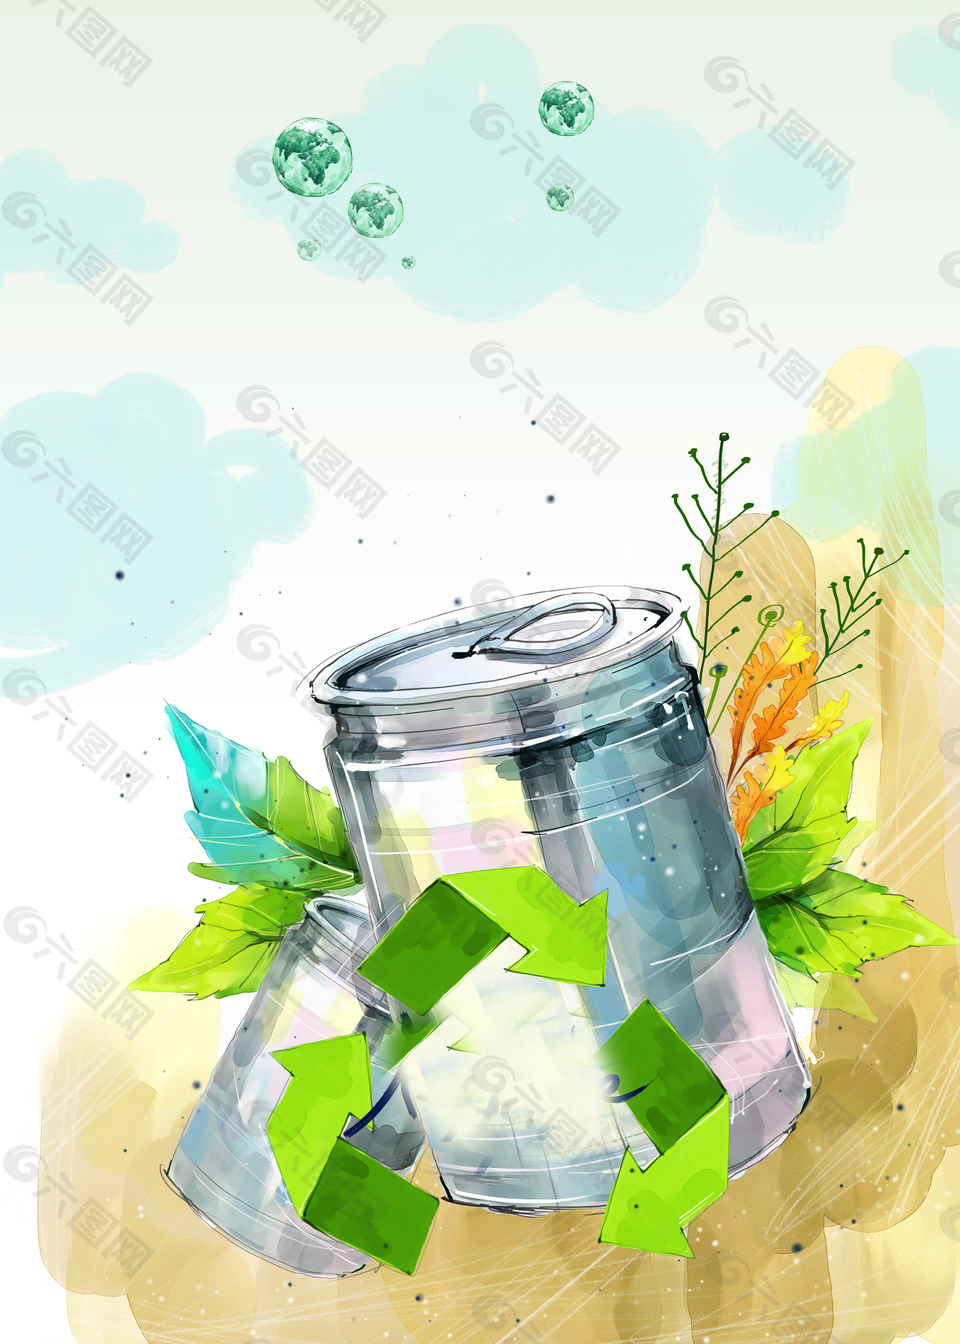 彩绘易拉罐创意保护环境背景